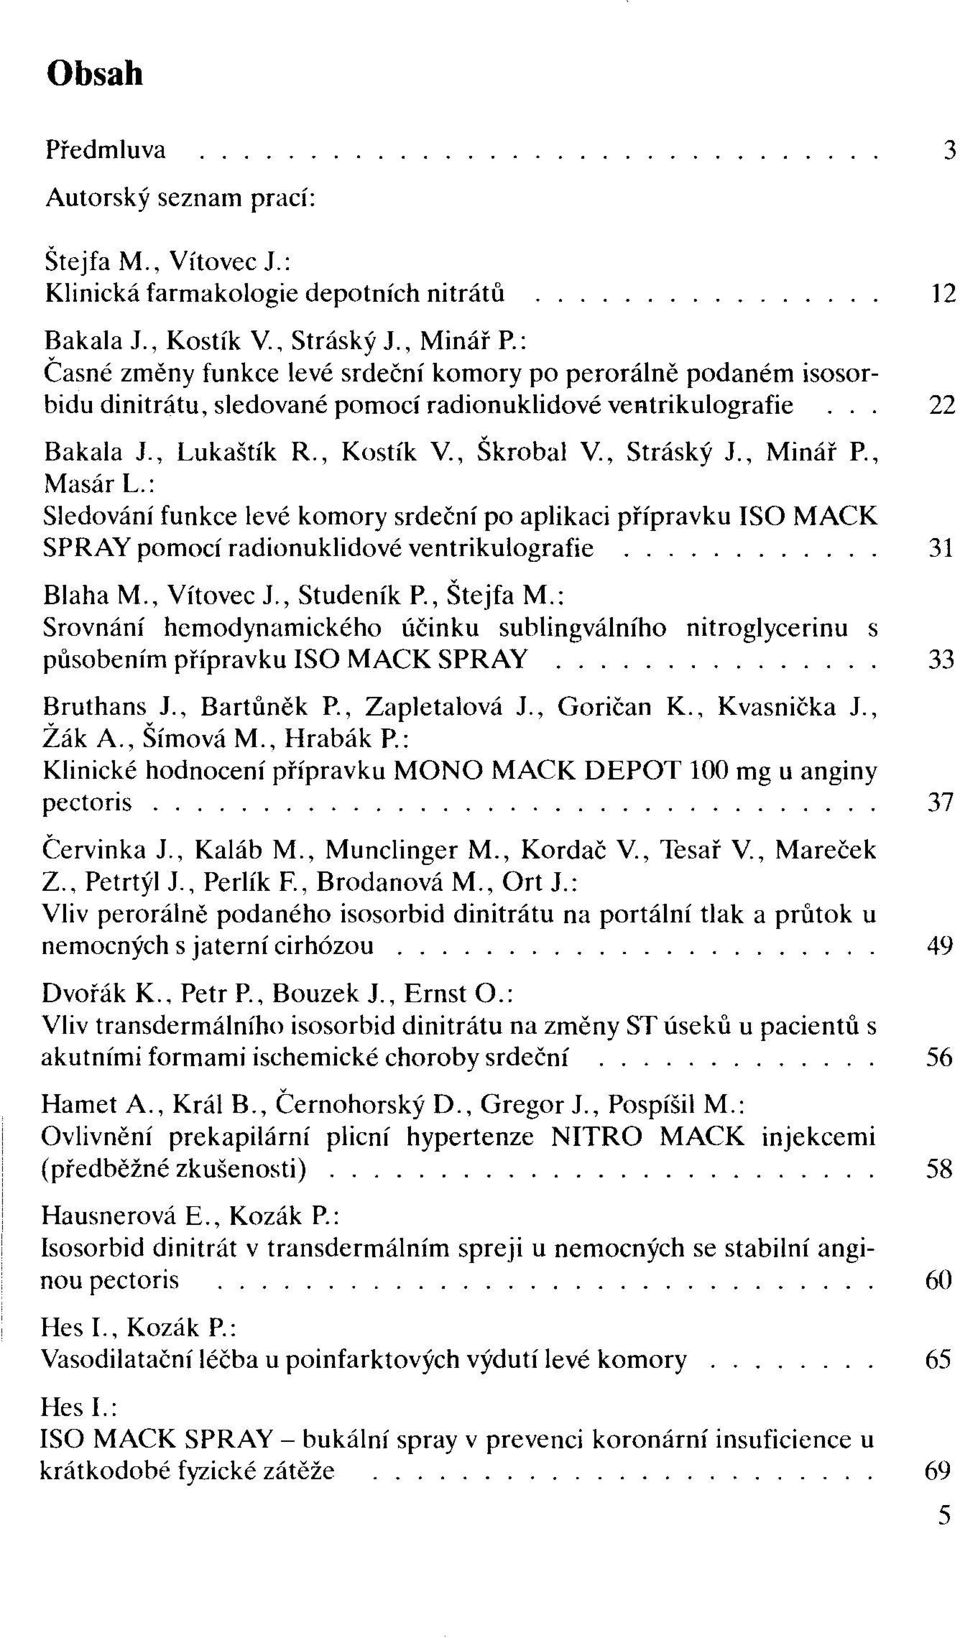 , Škrobal v., Stráský Jo, Minář Po, Masár L.: Sledování funkce levé komory srdeční po aplikaci přípravku ISO MACK SPRAY pomocí radionuklidové ventrikulografie. o o.